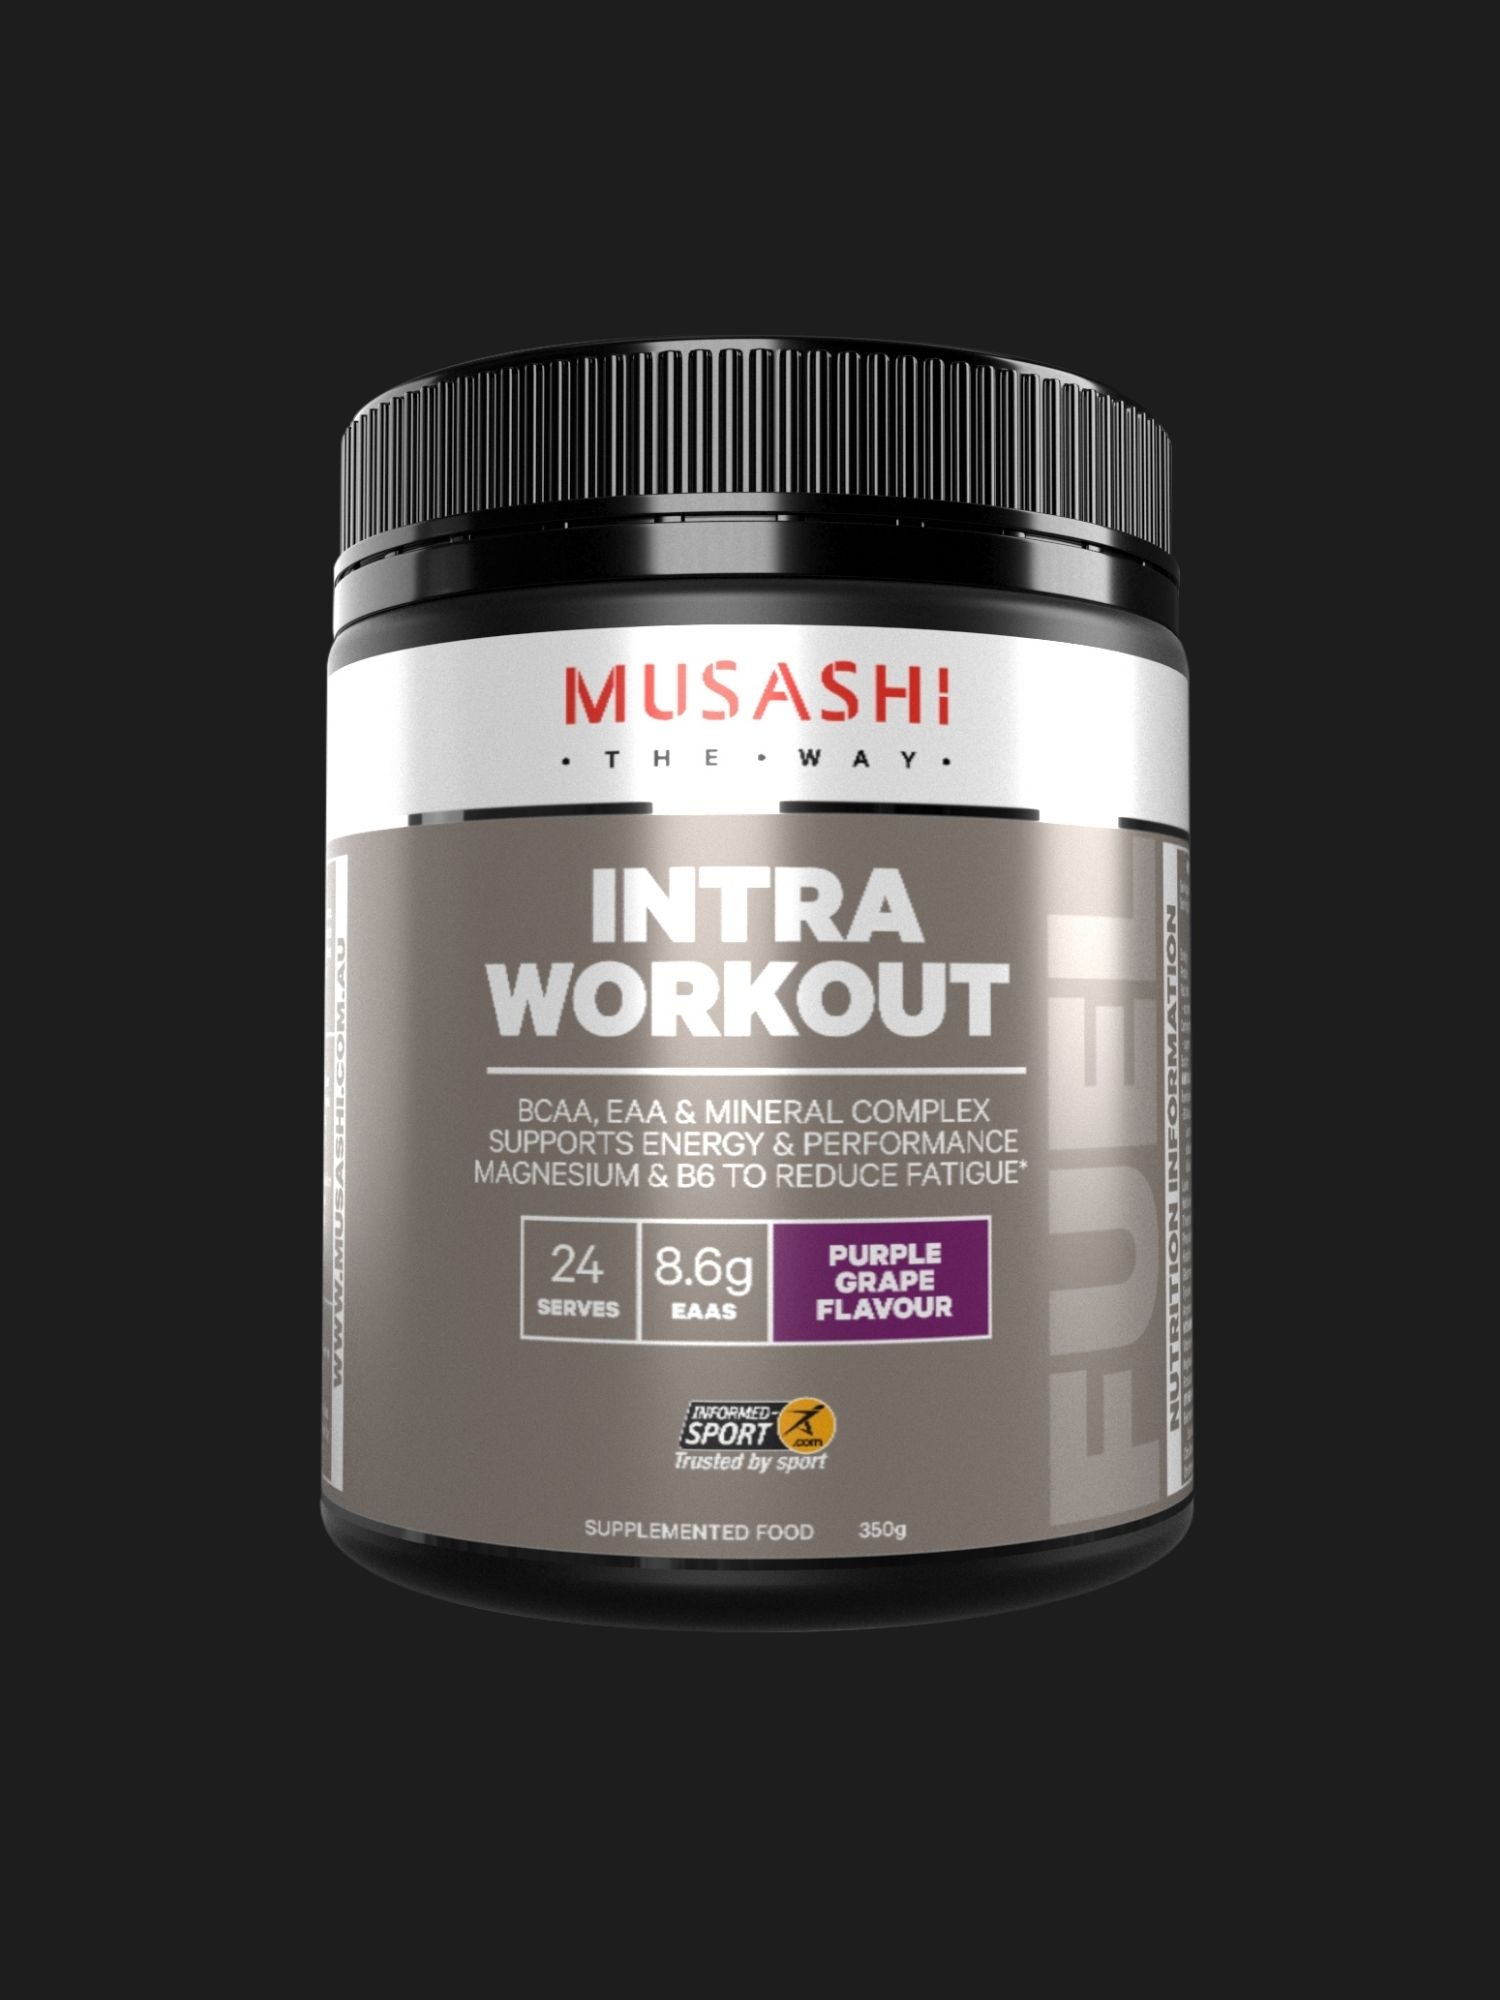 Intra Workout 350g Musashi